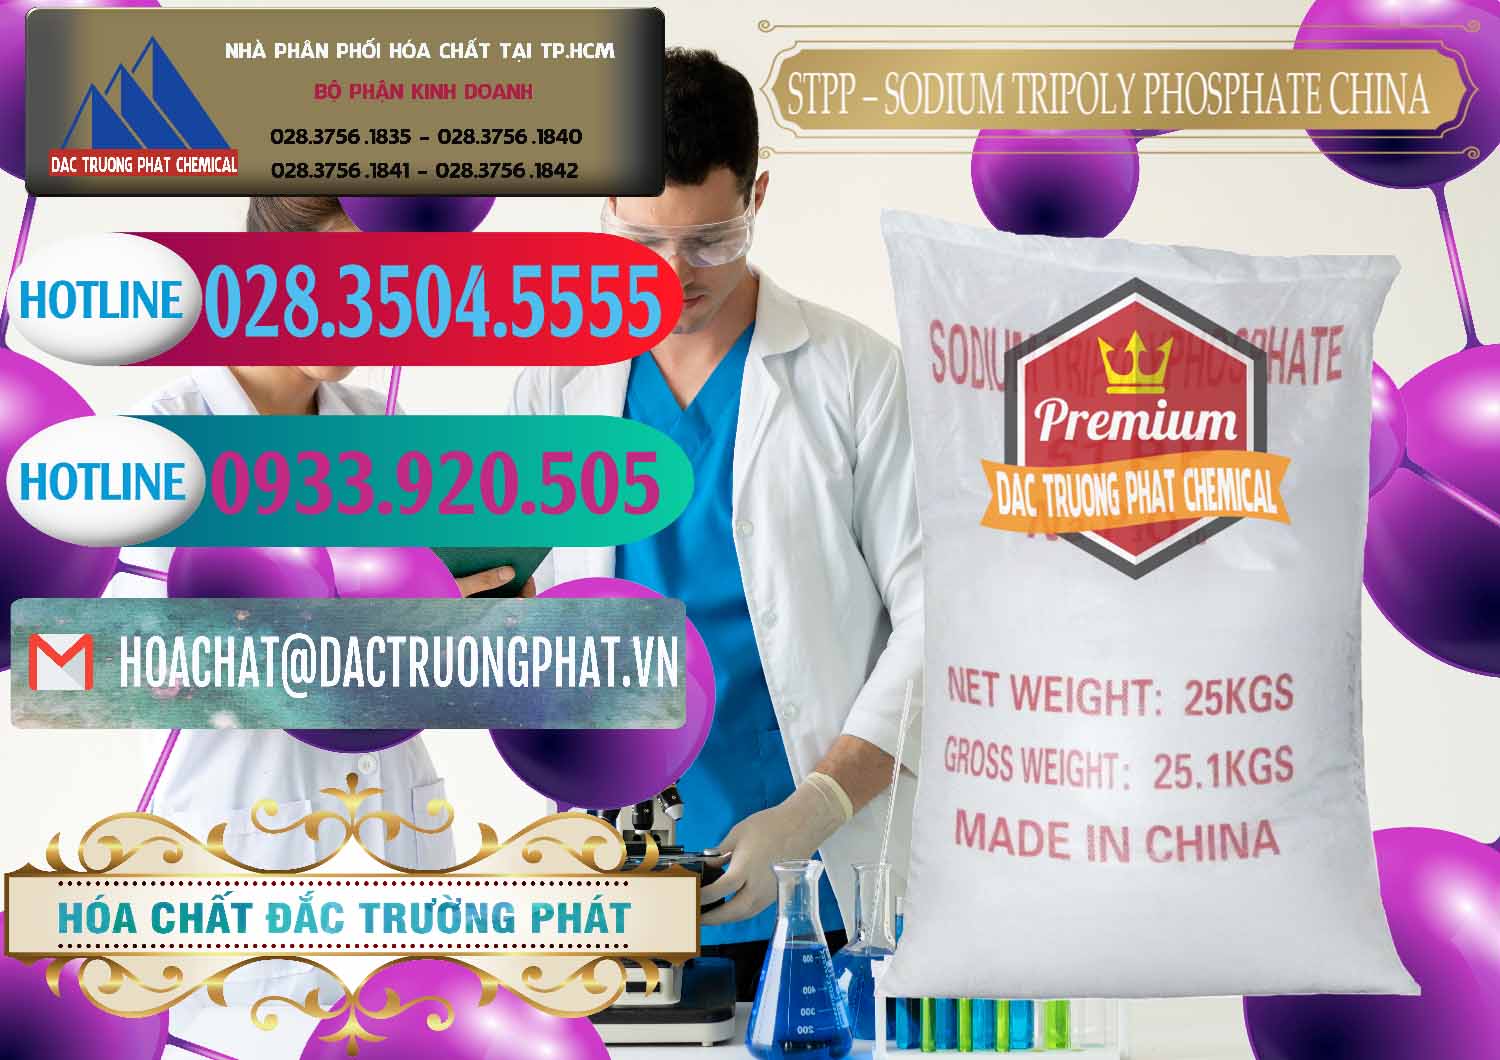 Công ty phân phối & bán Sodium Tripoly Phosphate - STPP 96% Chữ Đỏ Trung Quốc China - 0155 - Chuyên cung cấp _ phân phối hóa chất tại TP.HCM - truongphat.vn